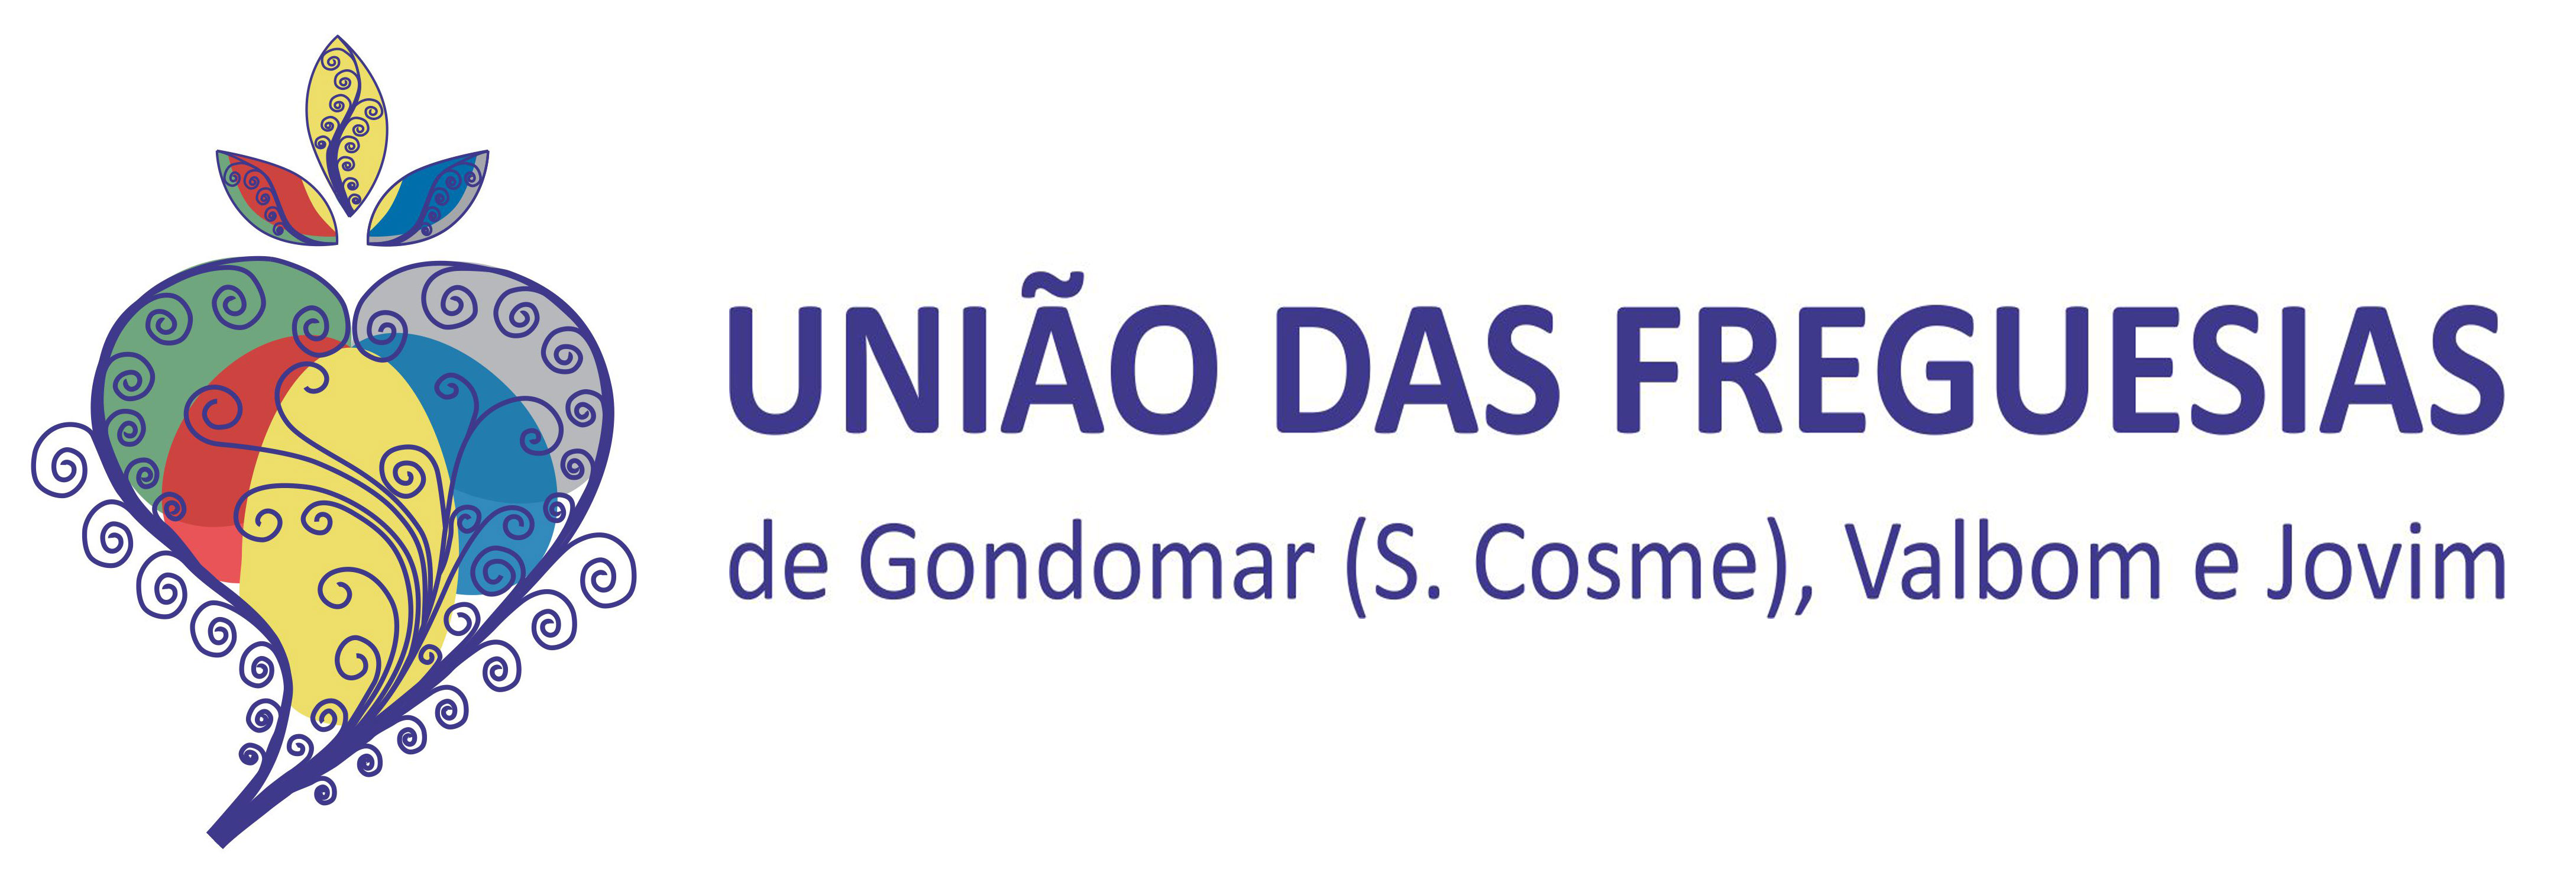 Uniao Das Freguesias De Gondomar (Scosme) Valbom e Jovim, Portugal